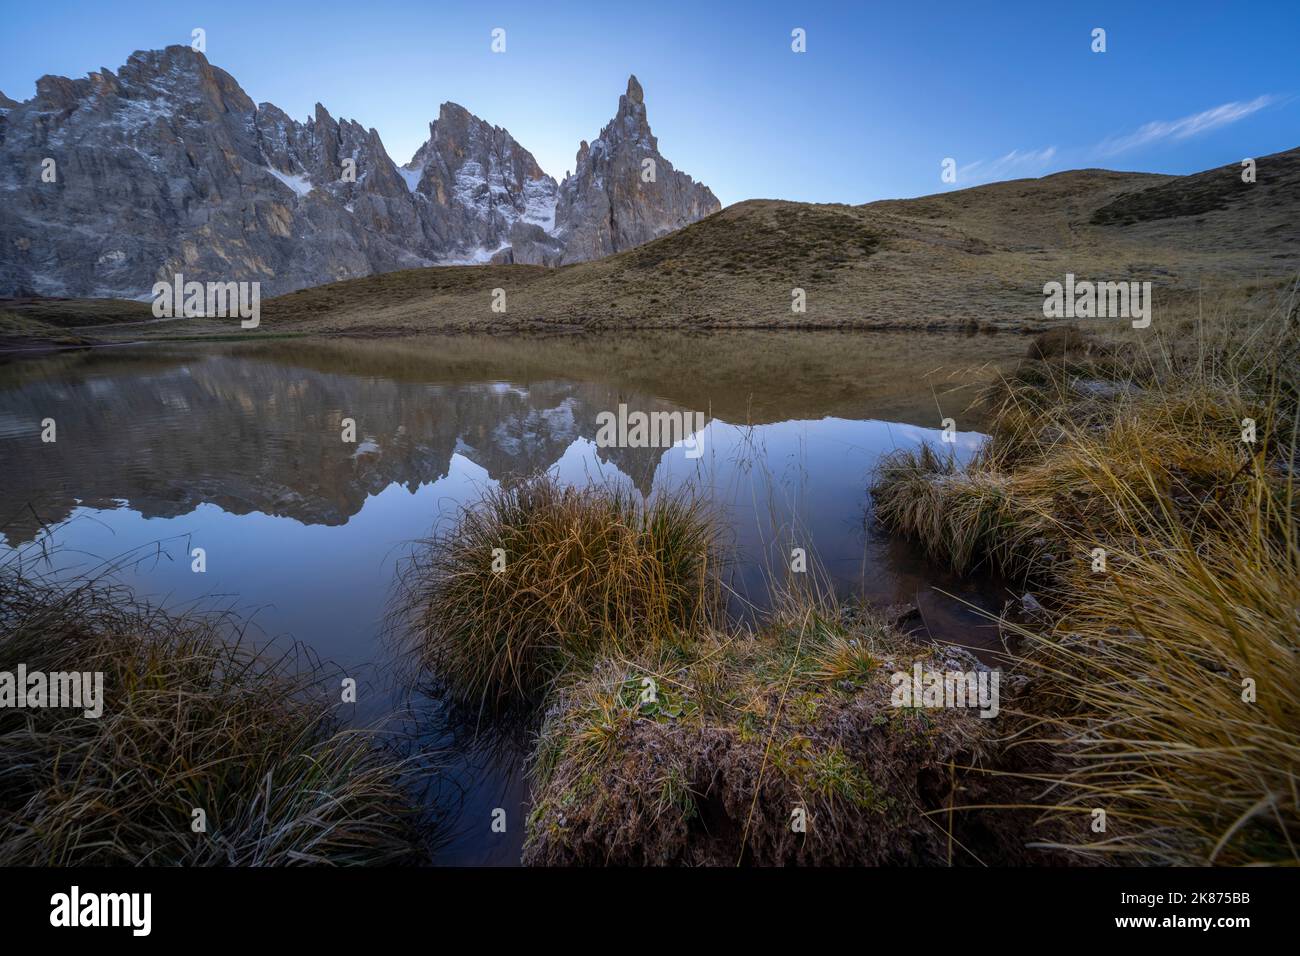 Cimon della pala riflesso in un lago, Passo Rolle, Dolomiti, Trentino, Italia, Europa Foto Stock